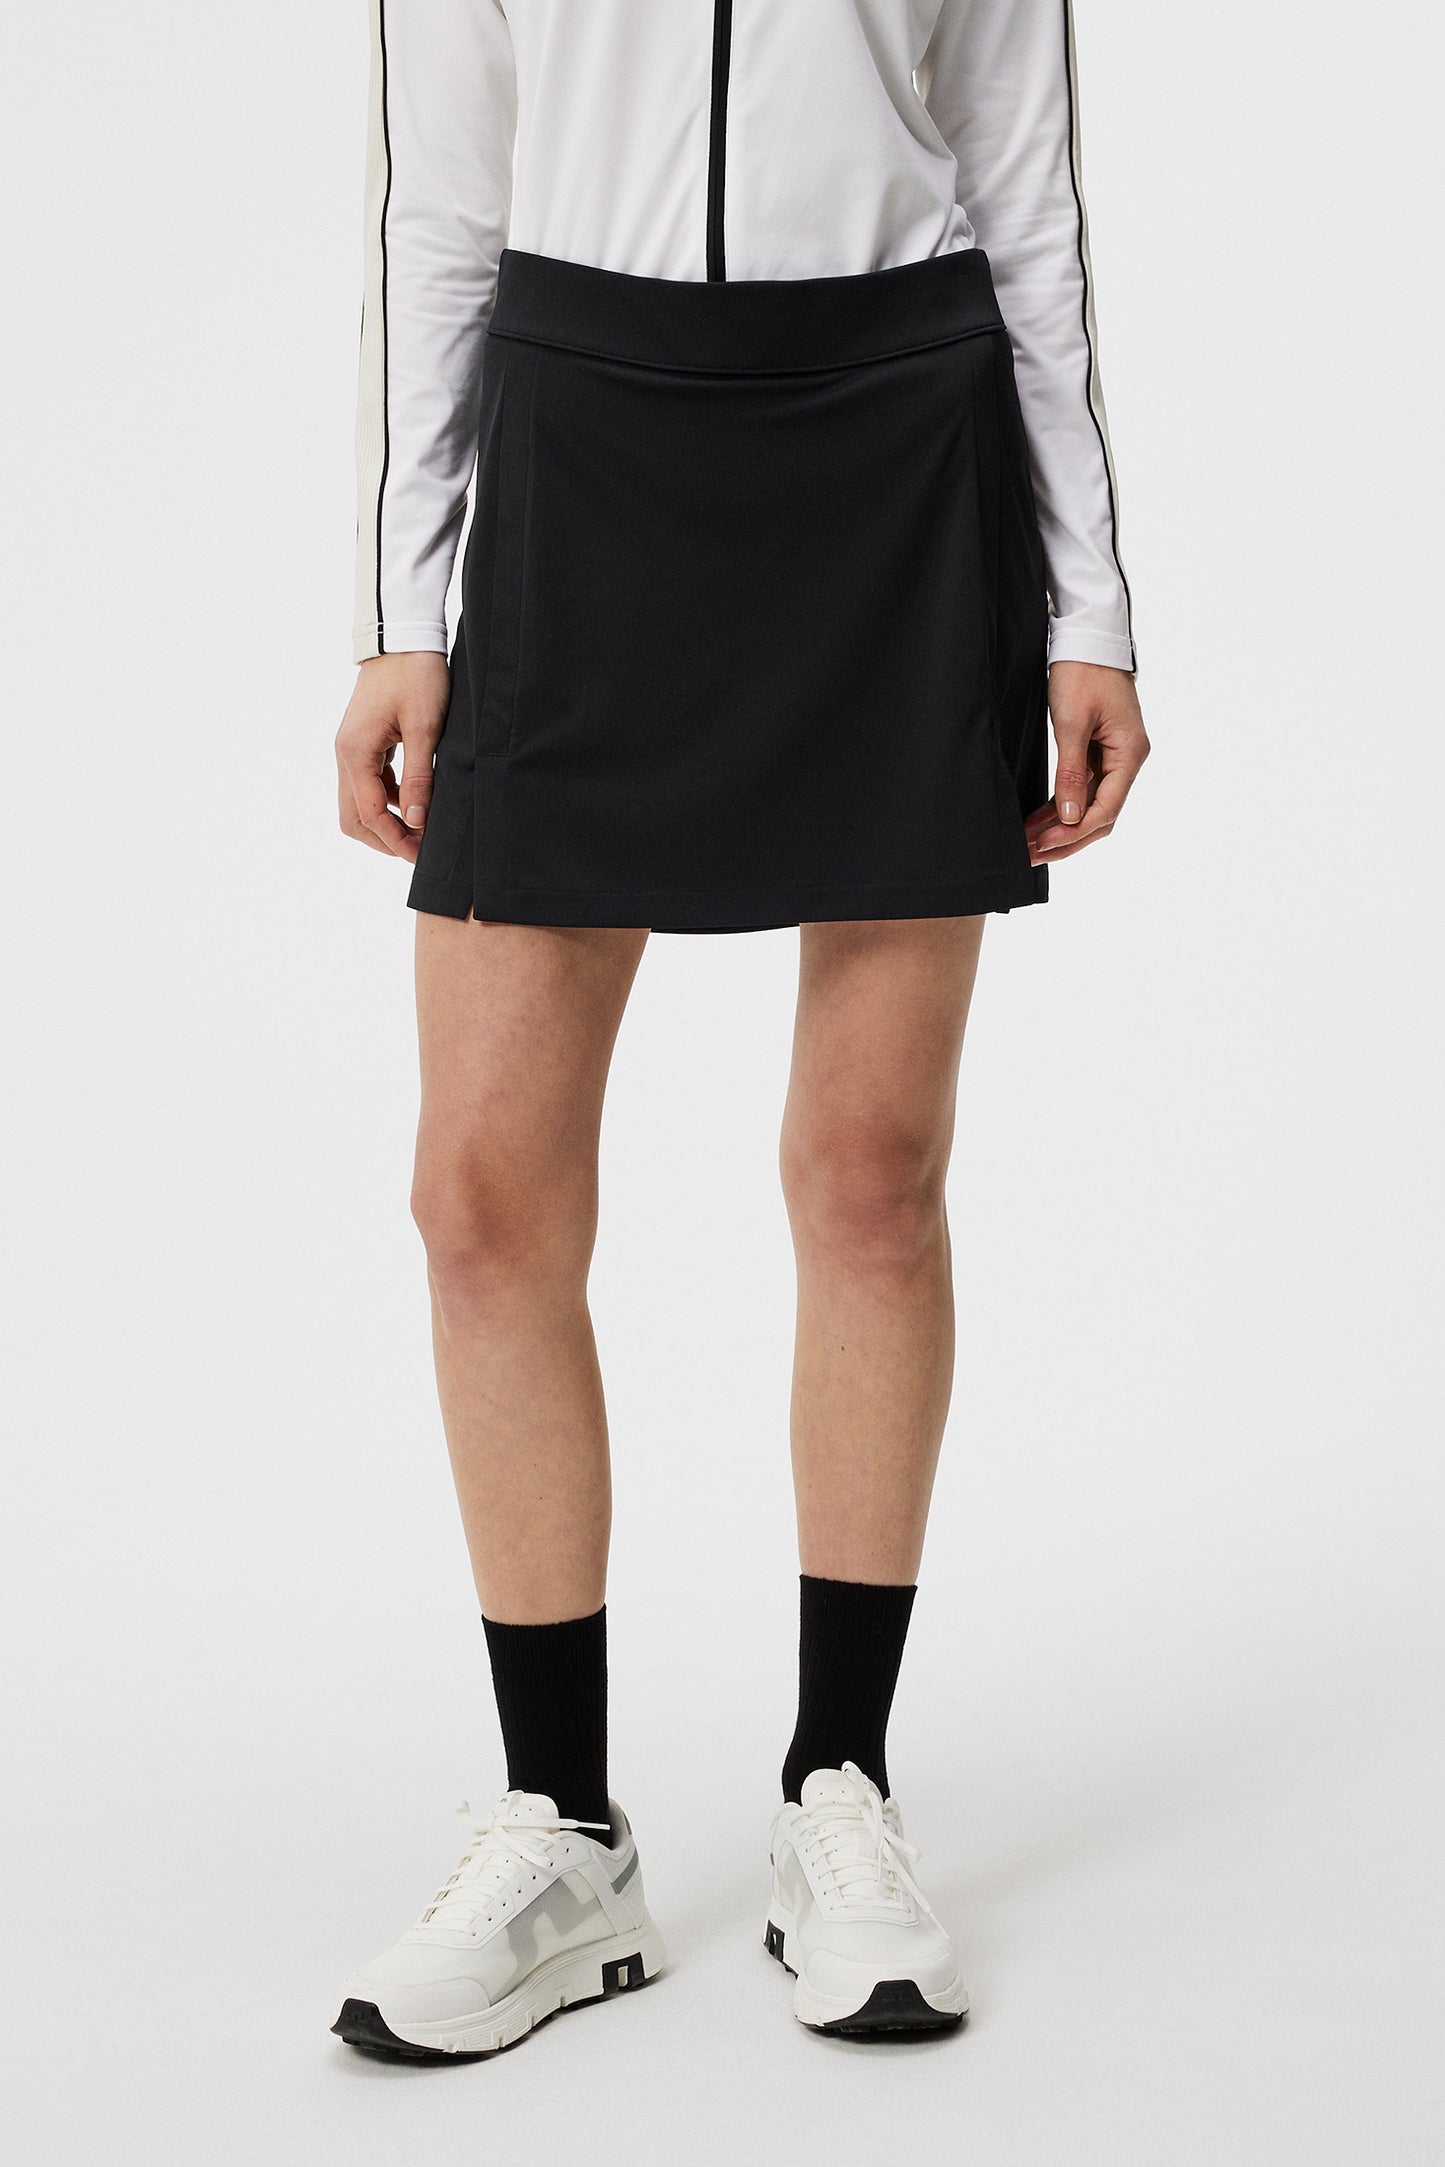 Amelie Mid Skirt / Black